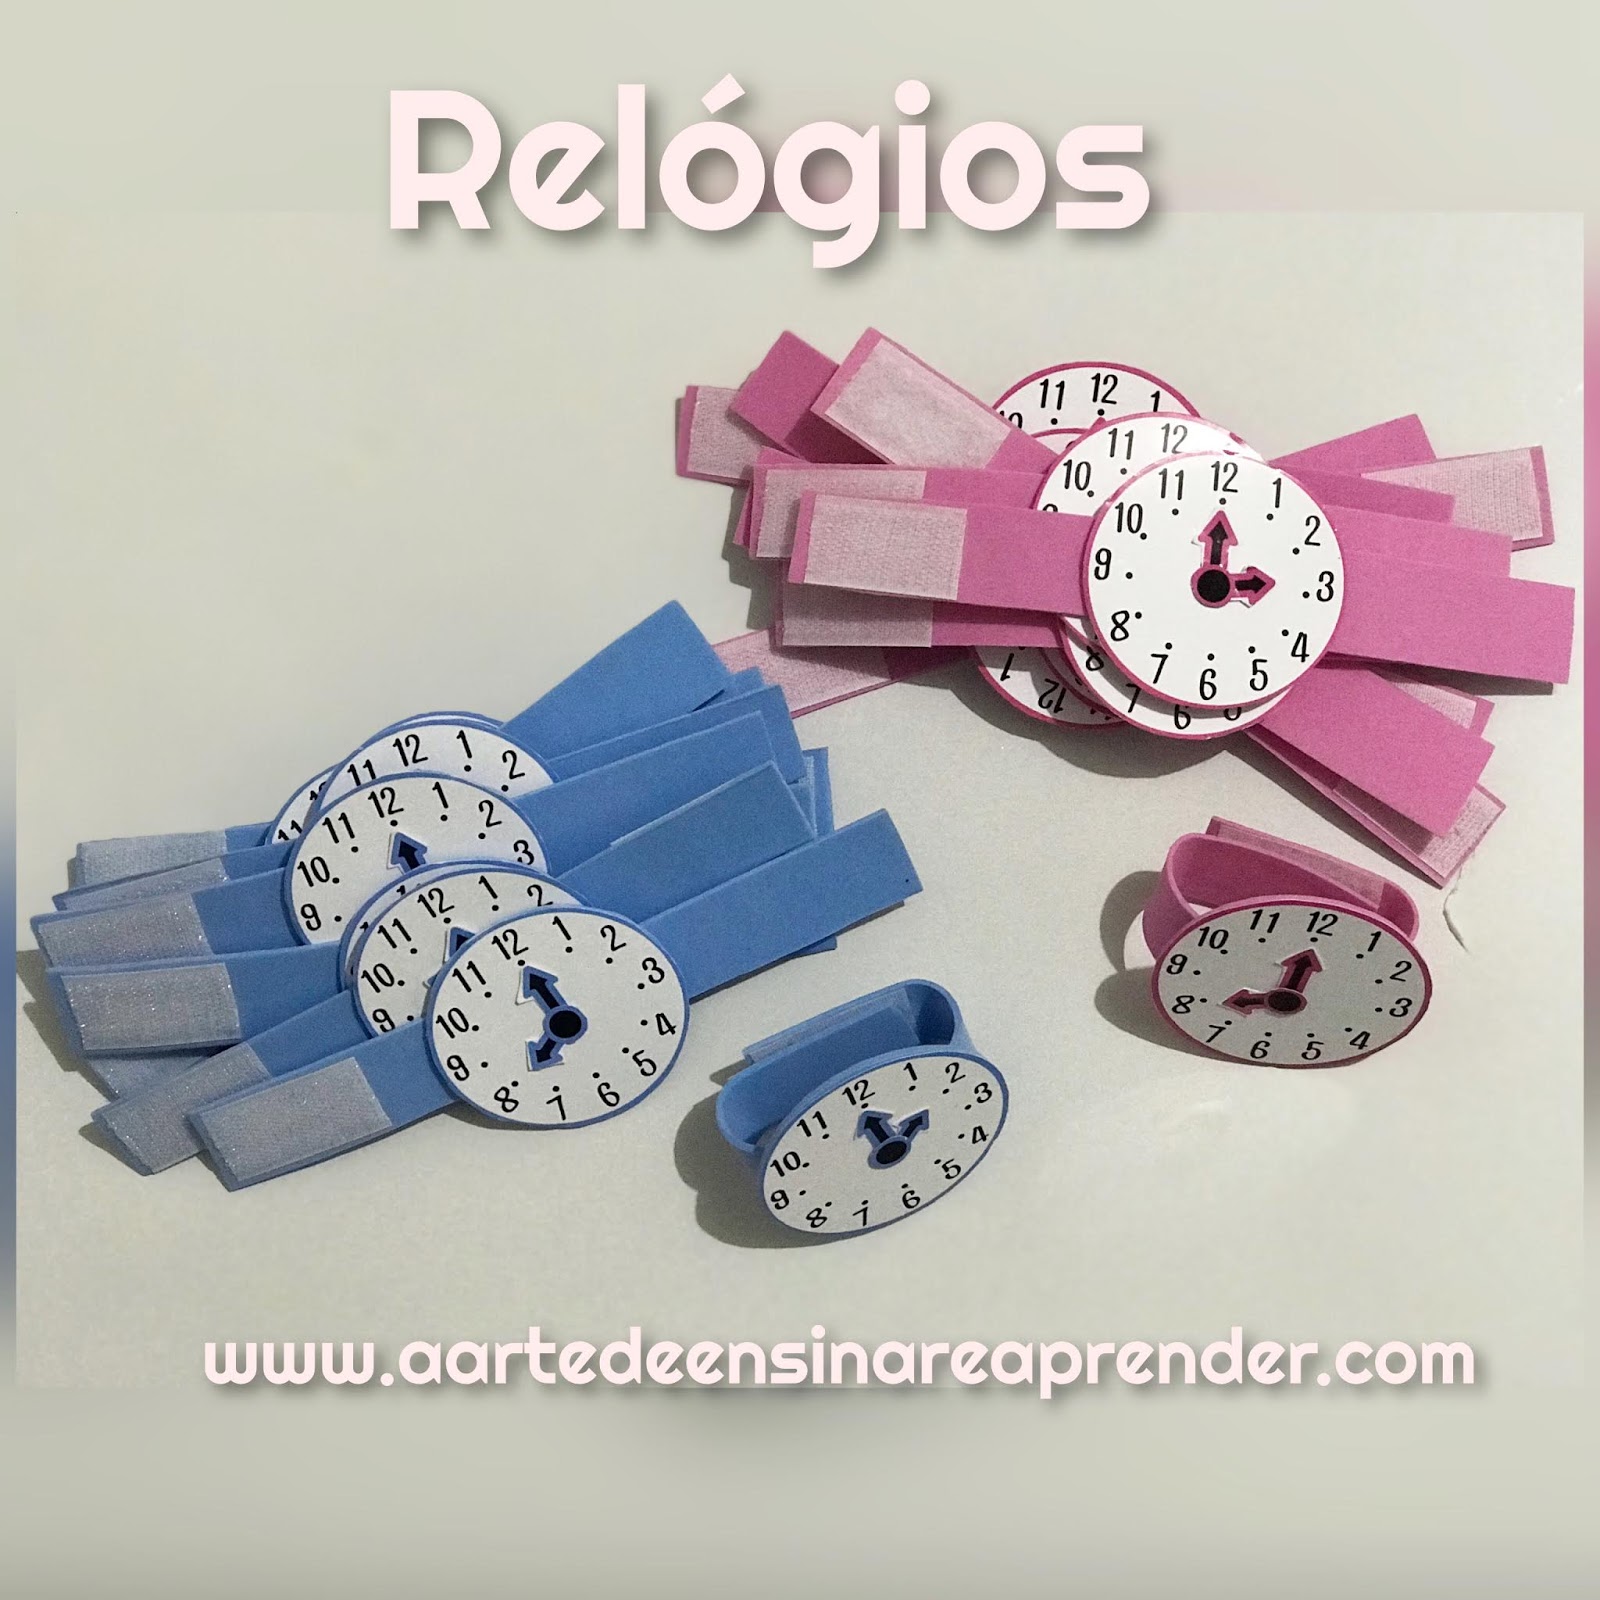 Molde de relógios  Ideias para relógio, Números de relógio, Relógios  artesanais